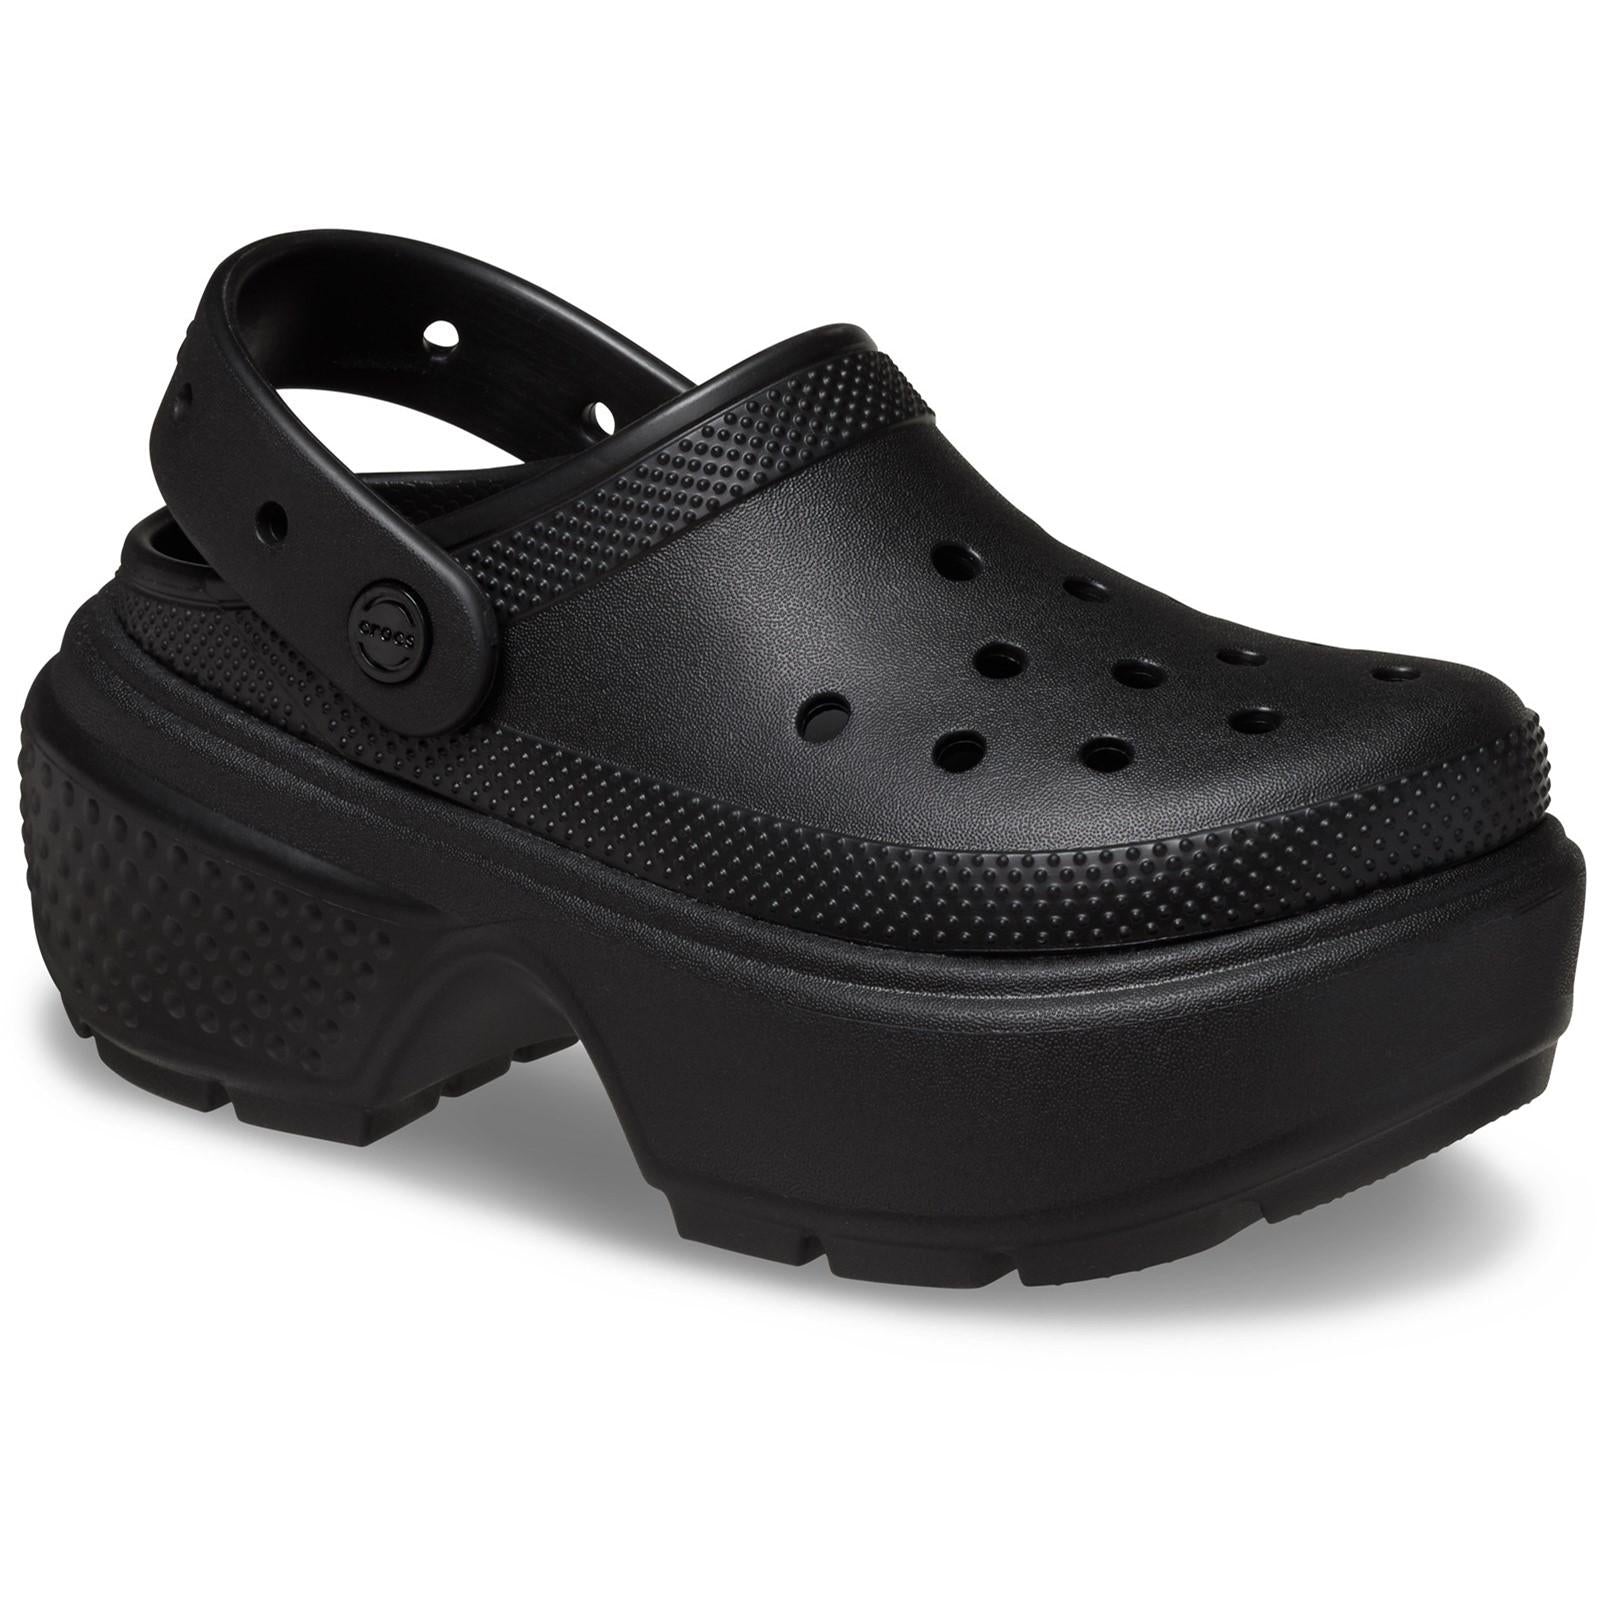 Crocs Stomp Clog Sandals